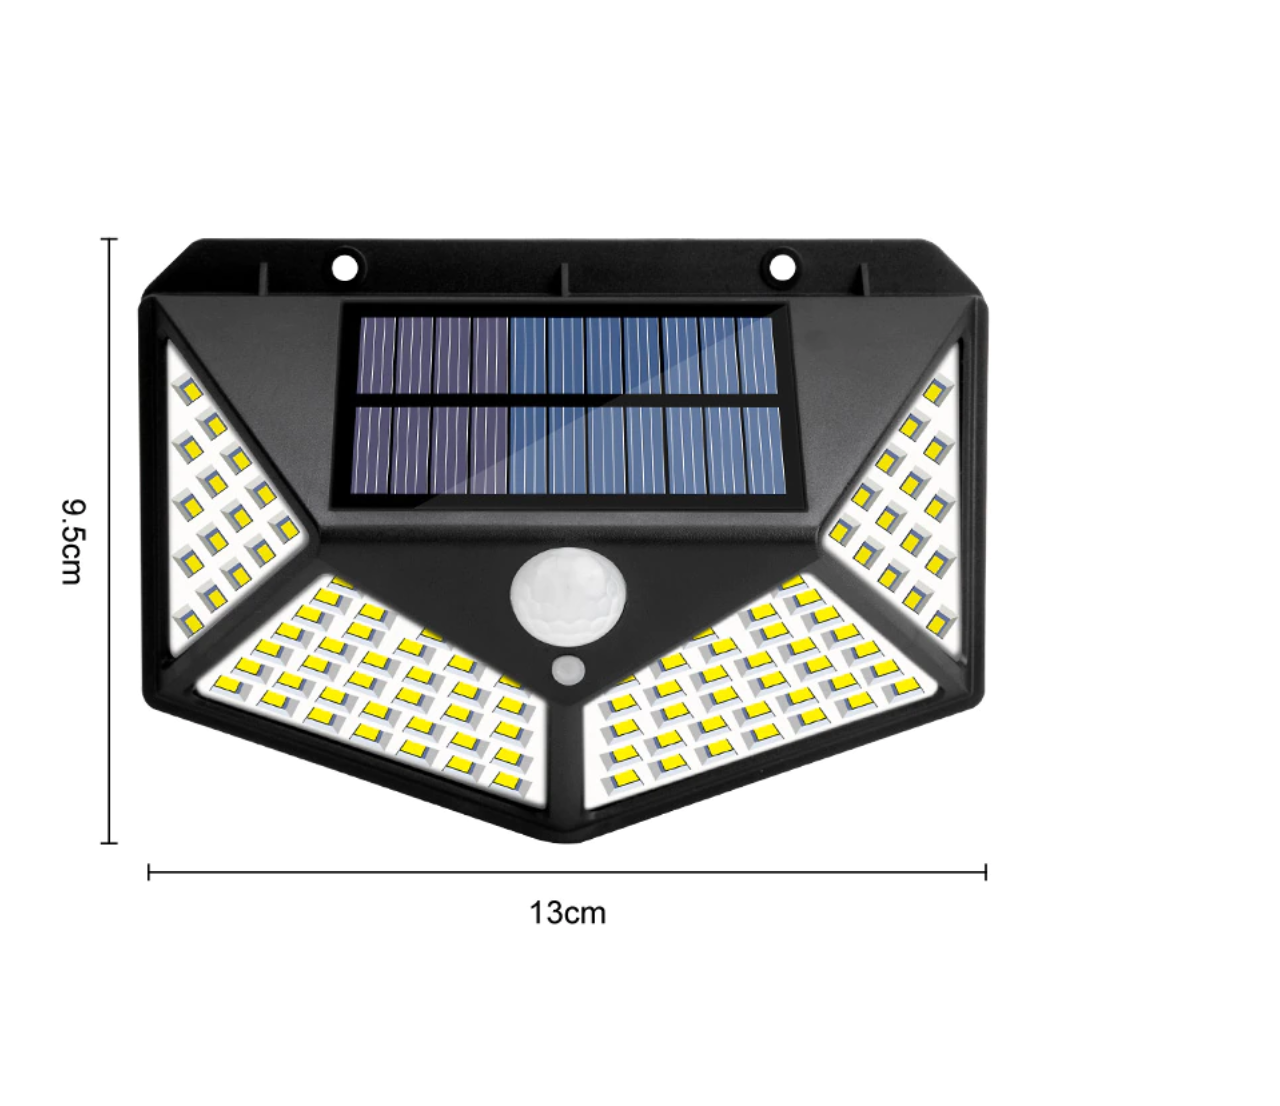 Refletor Solar SmartLed - Sua casa perfeitamente iluminada! (Promo Vip)